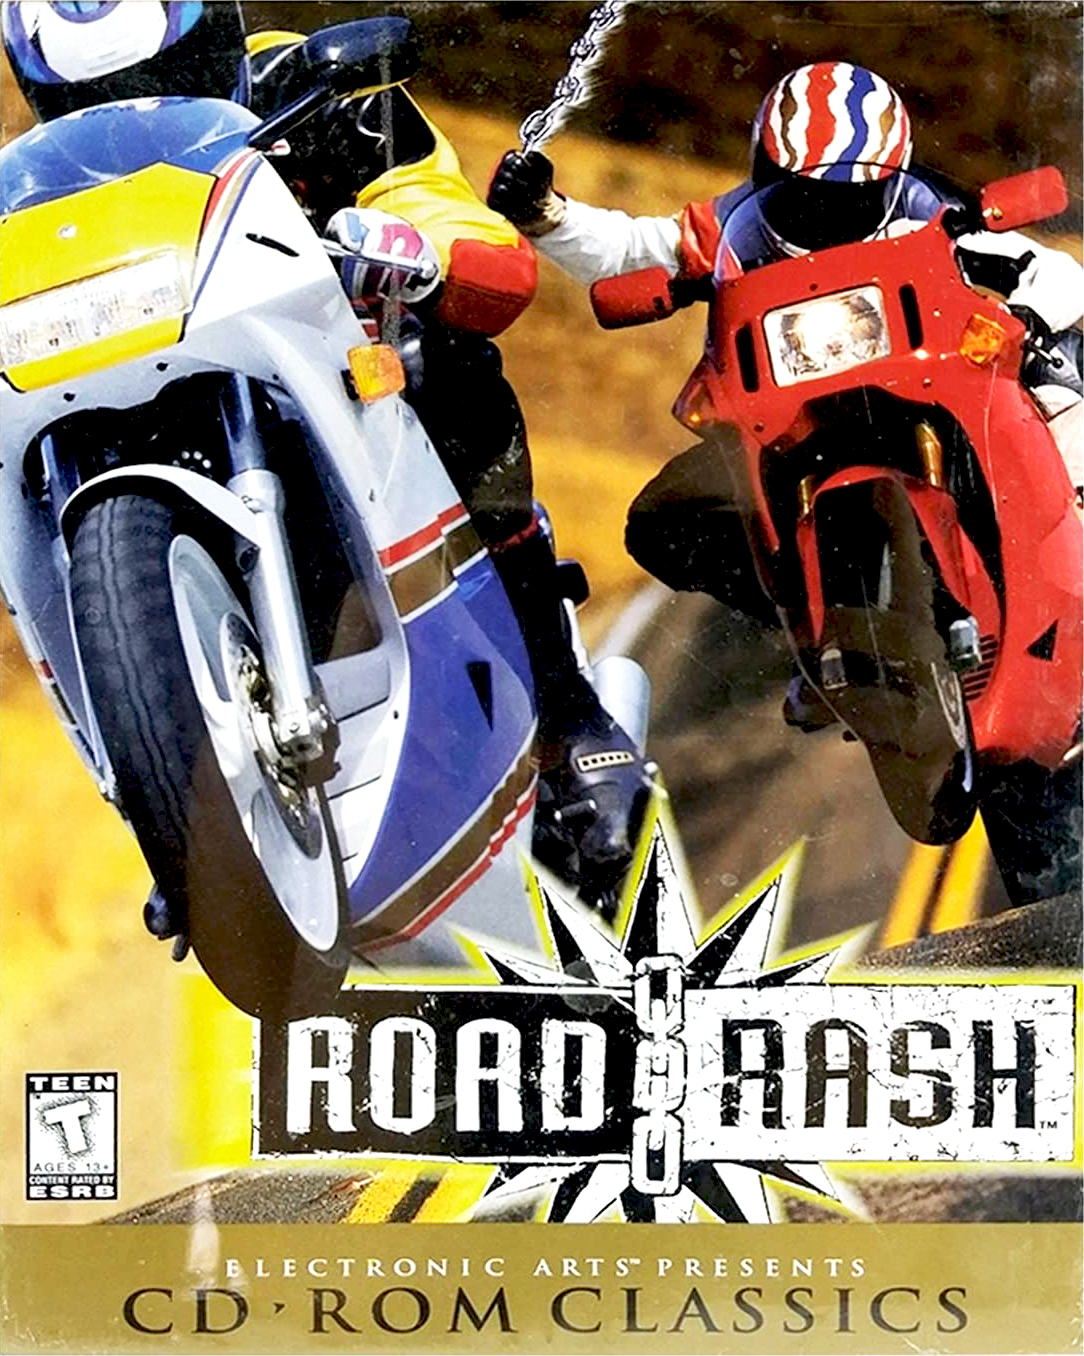 road rash 95 crack download